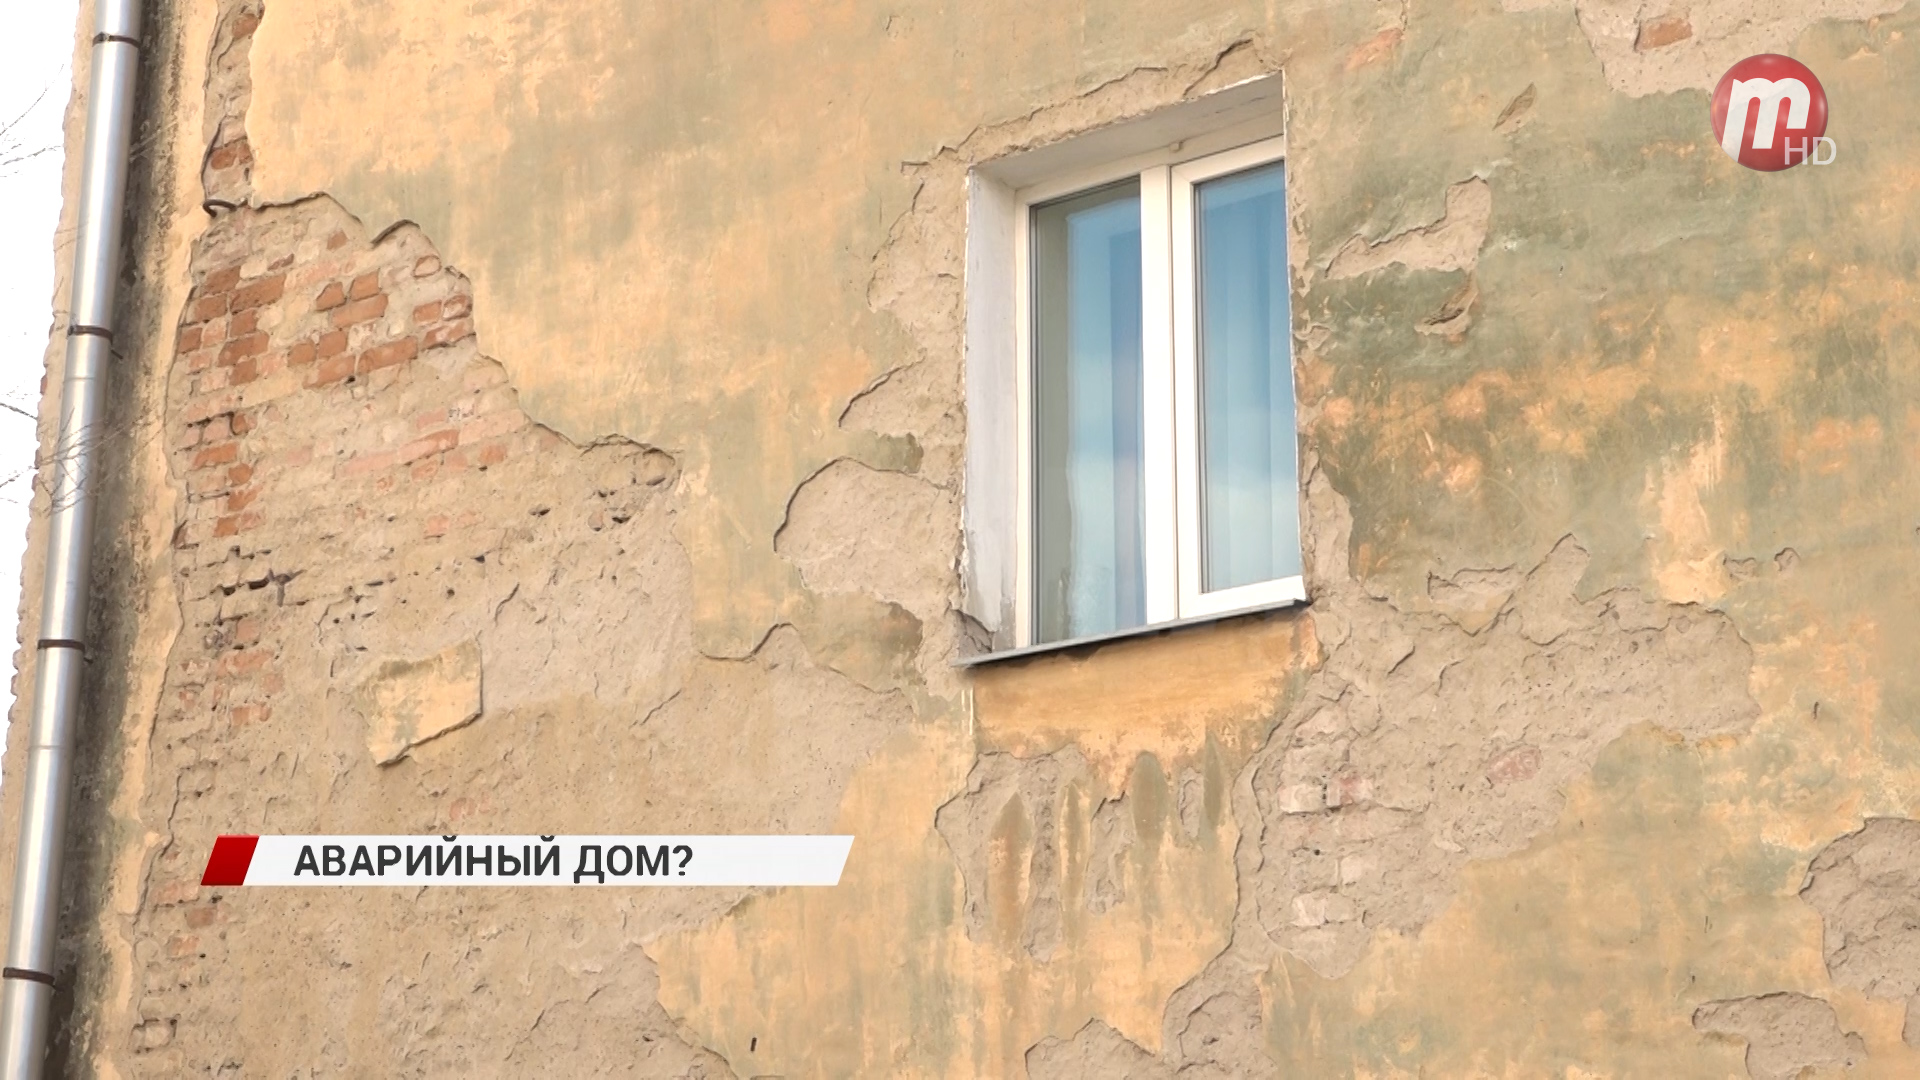 Жителей дома на улице Буйко возмутила новость о том, что их дом признали аварийным без их ведома